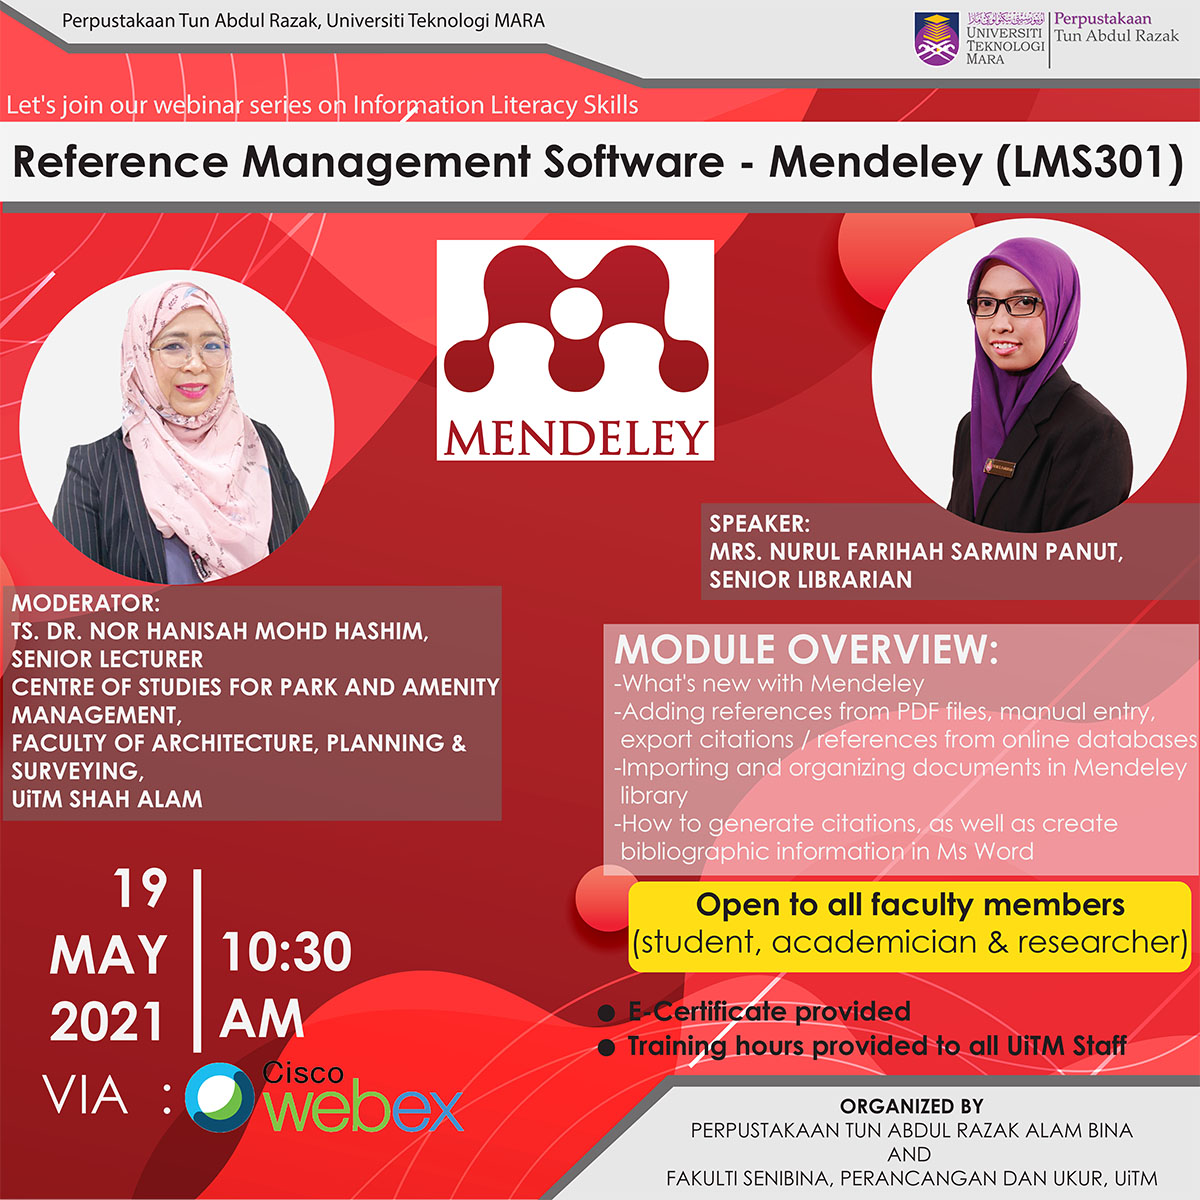 Reference Management Software - Mendeley (LMS301)